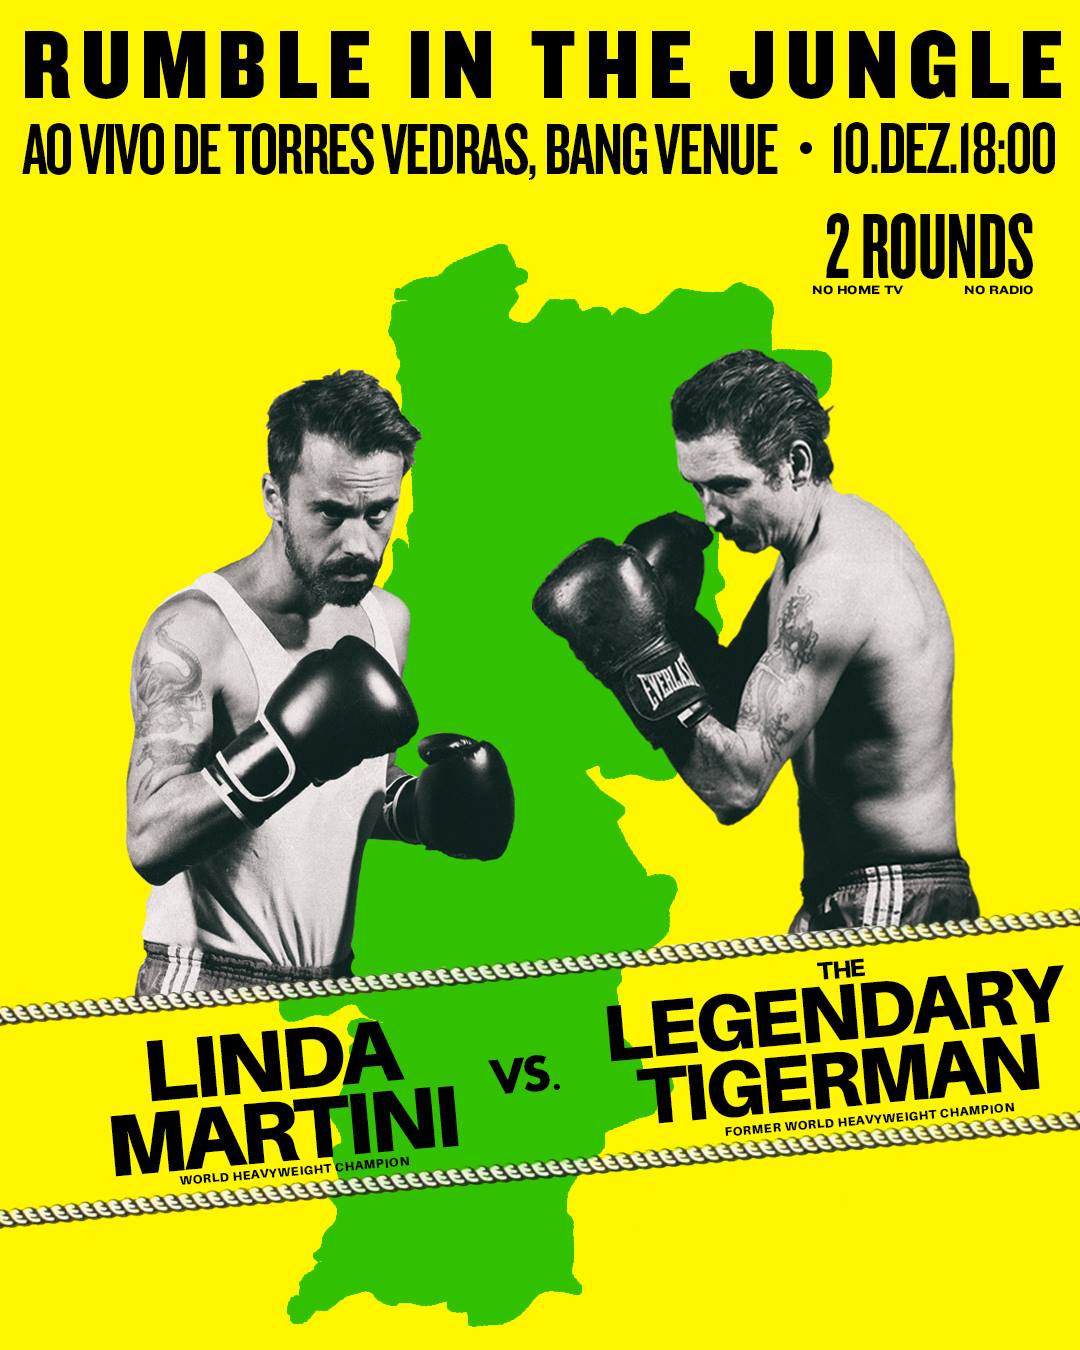 Concerto Legendary Tigerman e Linda Martini